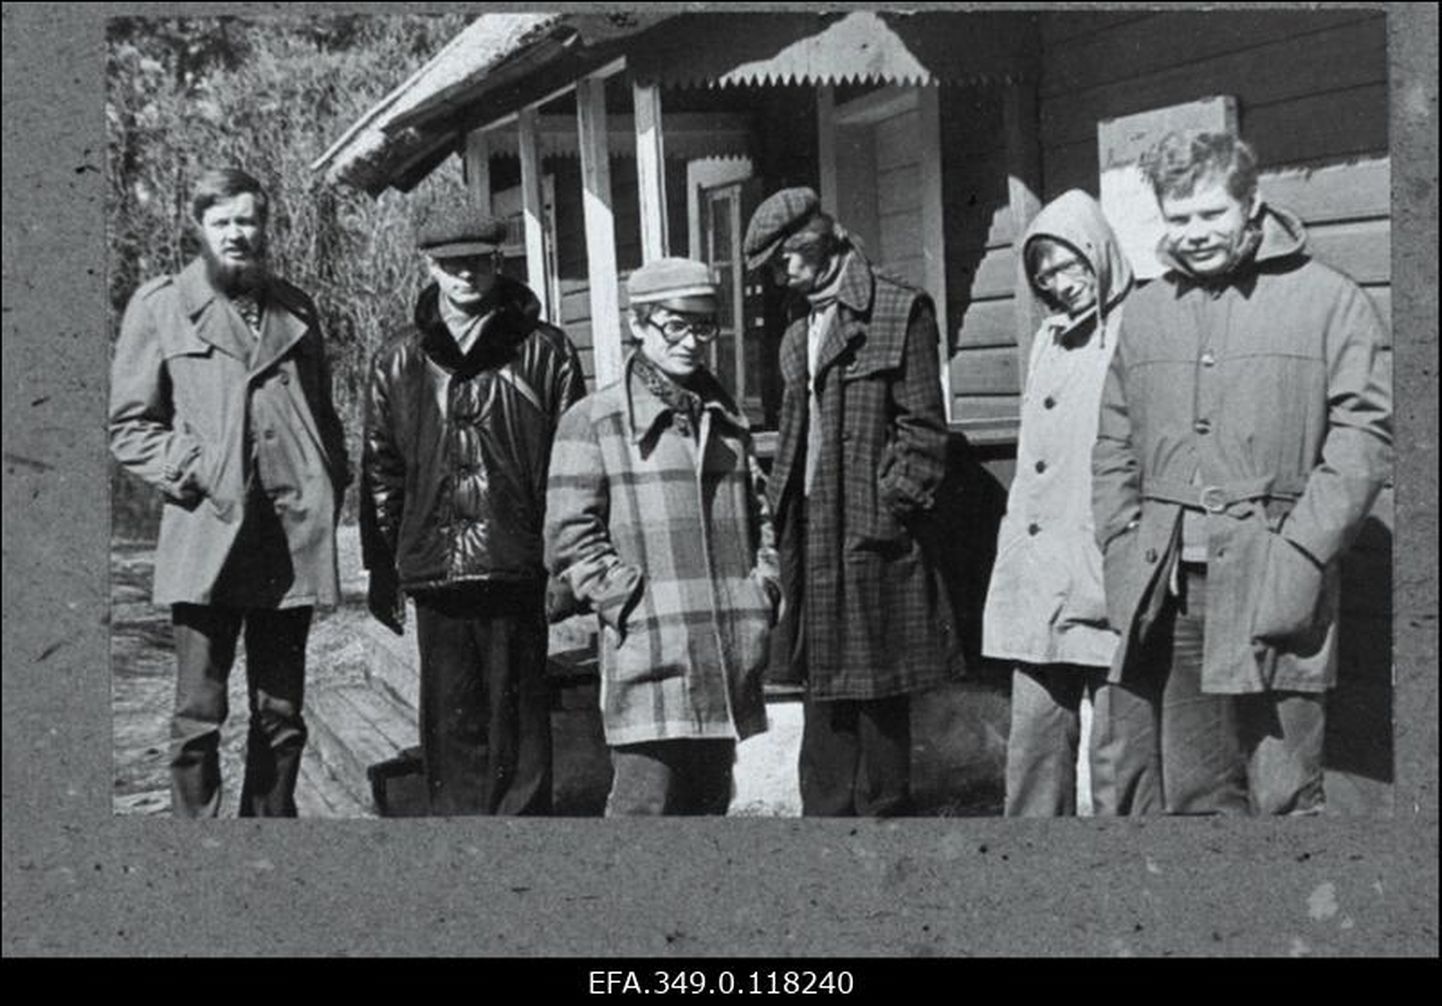 Pildil on Tartu Noorte Autorite Koondise liikmed Kassaris kirjanik Aino Kalda suvemaja juures, aprillis 1981. Vasakult: Aado Lintrop, Rannar Susi, Imre Siil, Taavi Tuulik, Kajar Pruul, Kalev Kesküla.